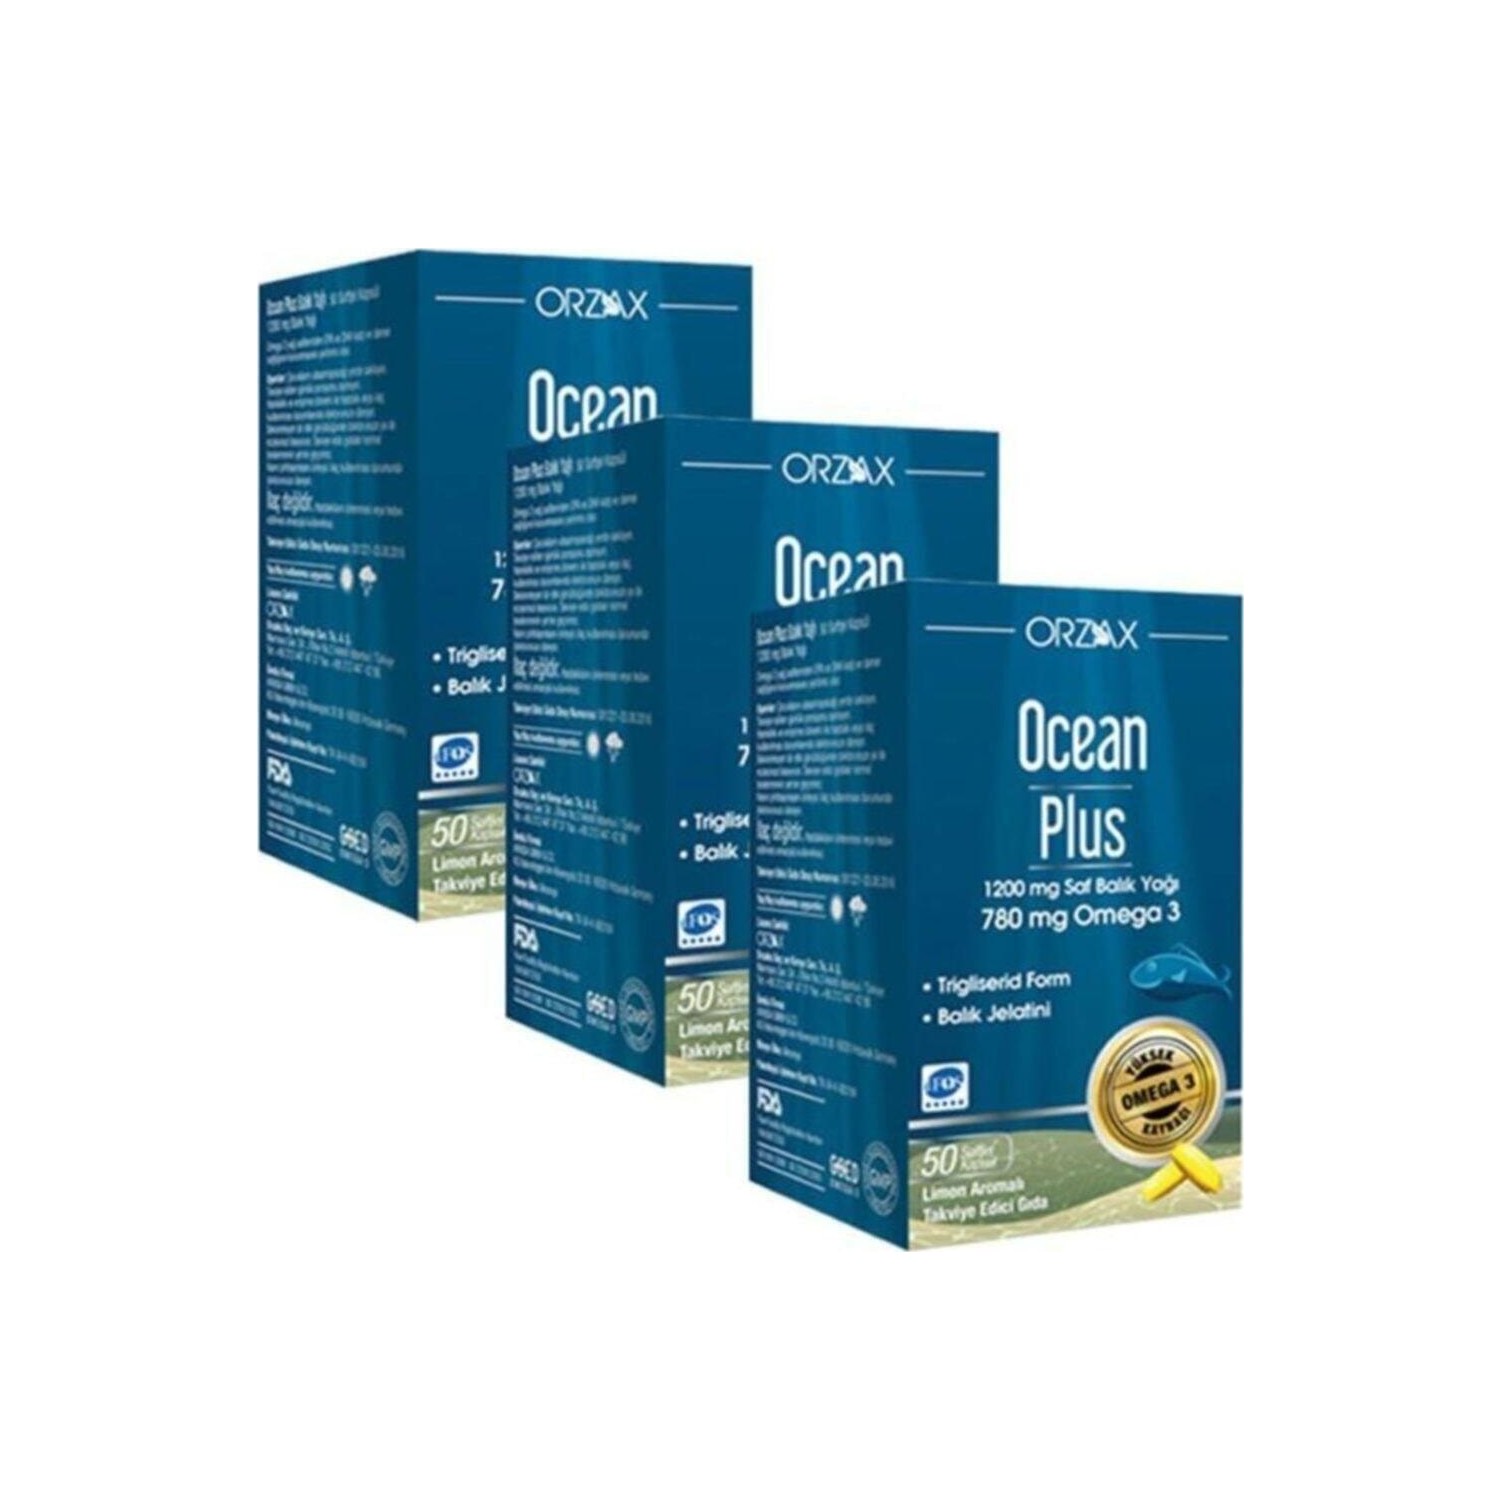 Омега-3 Plus Orzax 1200 мг, 3 упаковки по 50 капсул